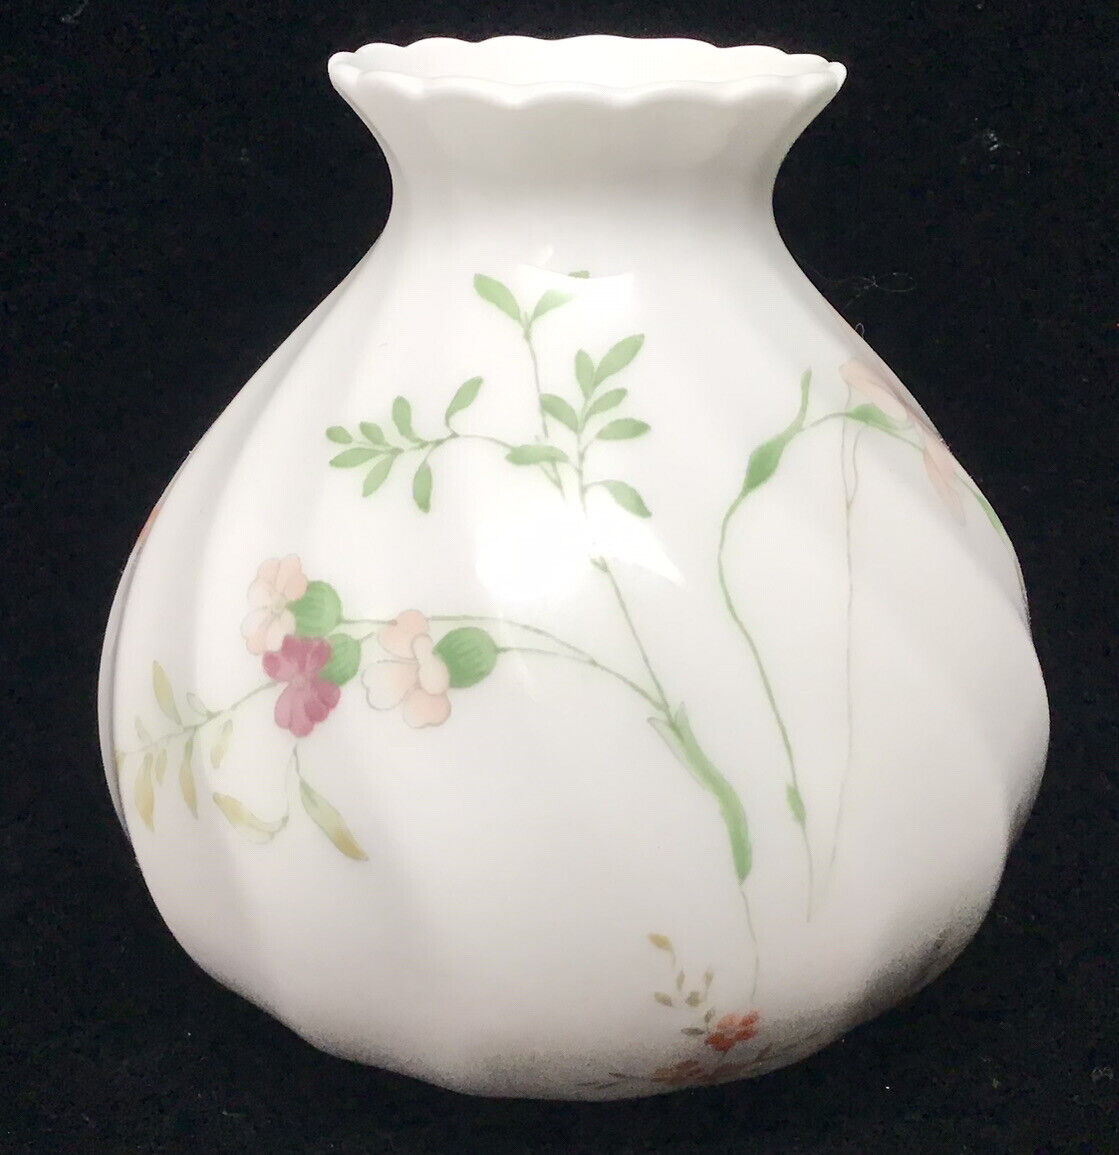 Vintage Wedgwood Campion Vase Bone China Made in England 3 1/4”(31)